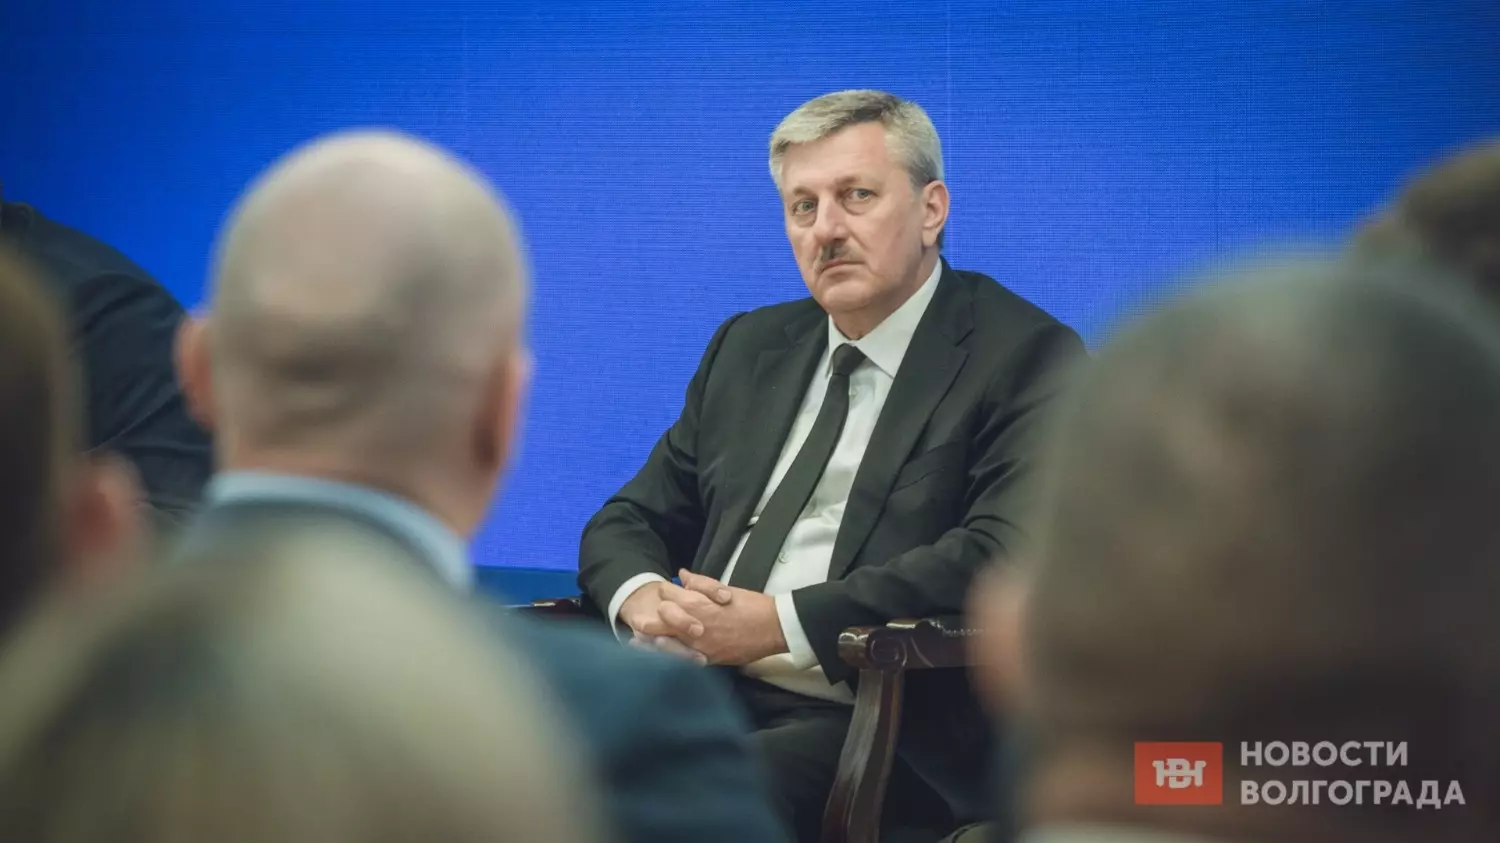 Глава Волгограда Владимир Марченко подробно рассказал о пунктах программы развития Волгограда